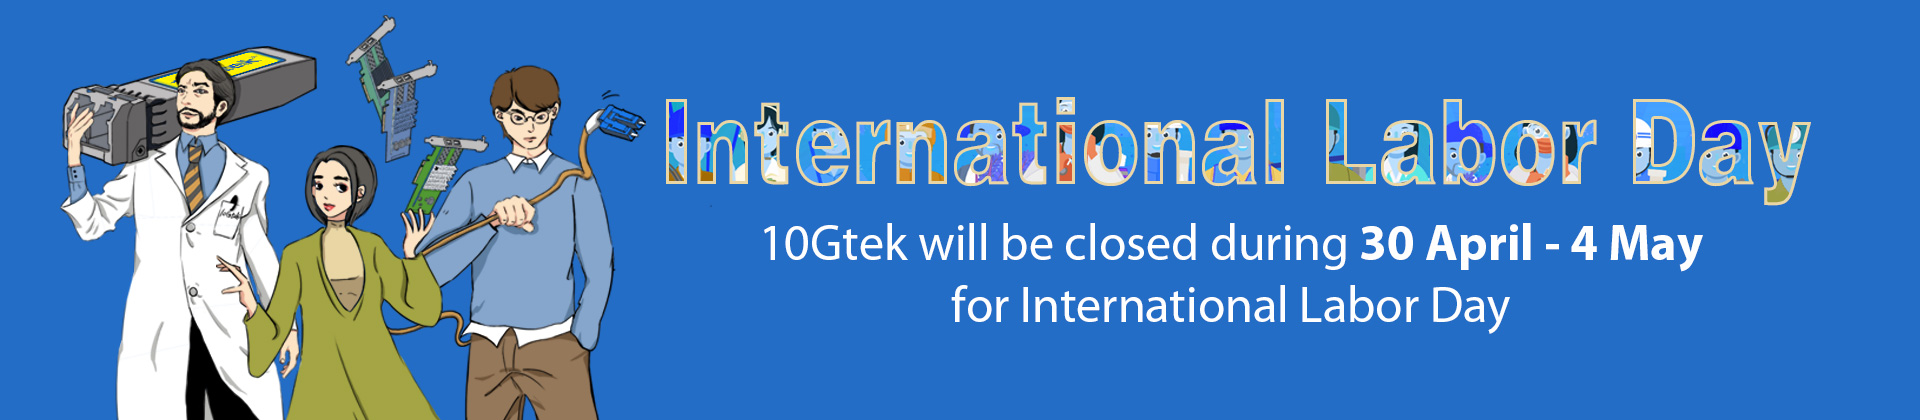 10Gtek international labor day notice